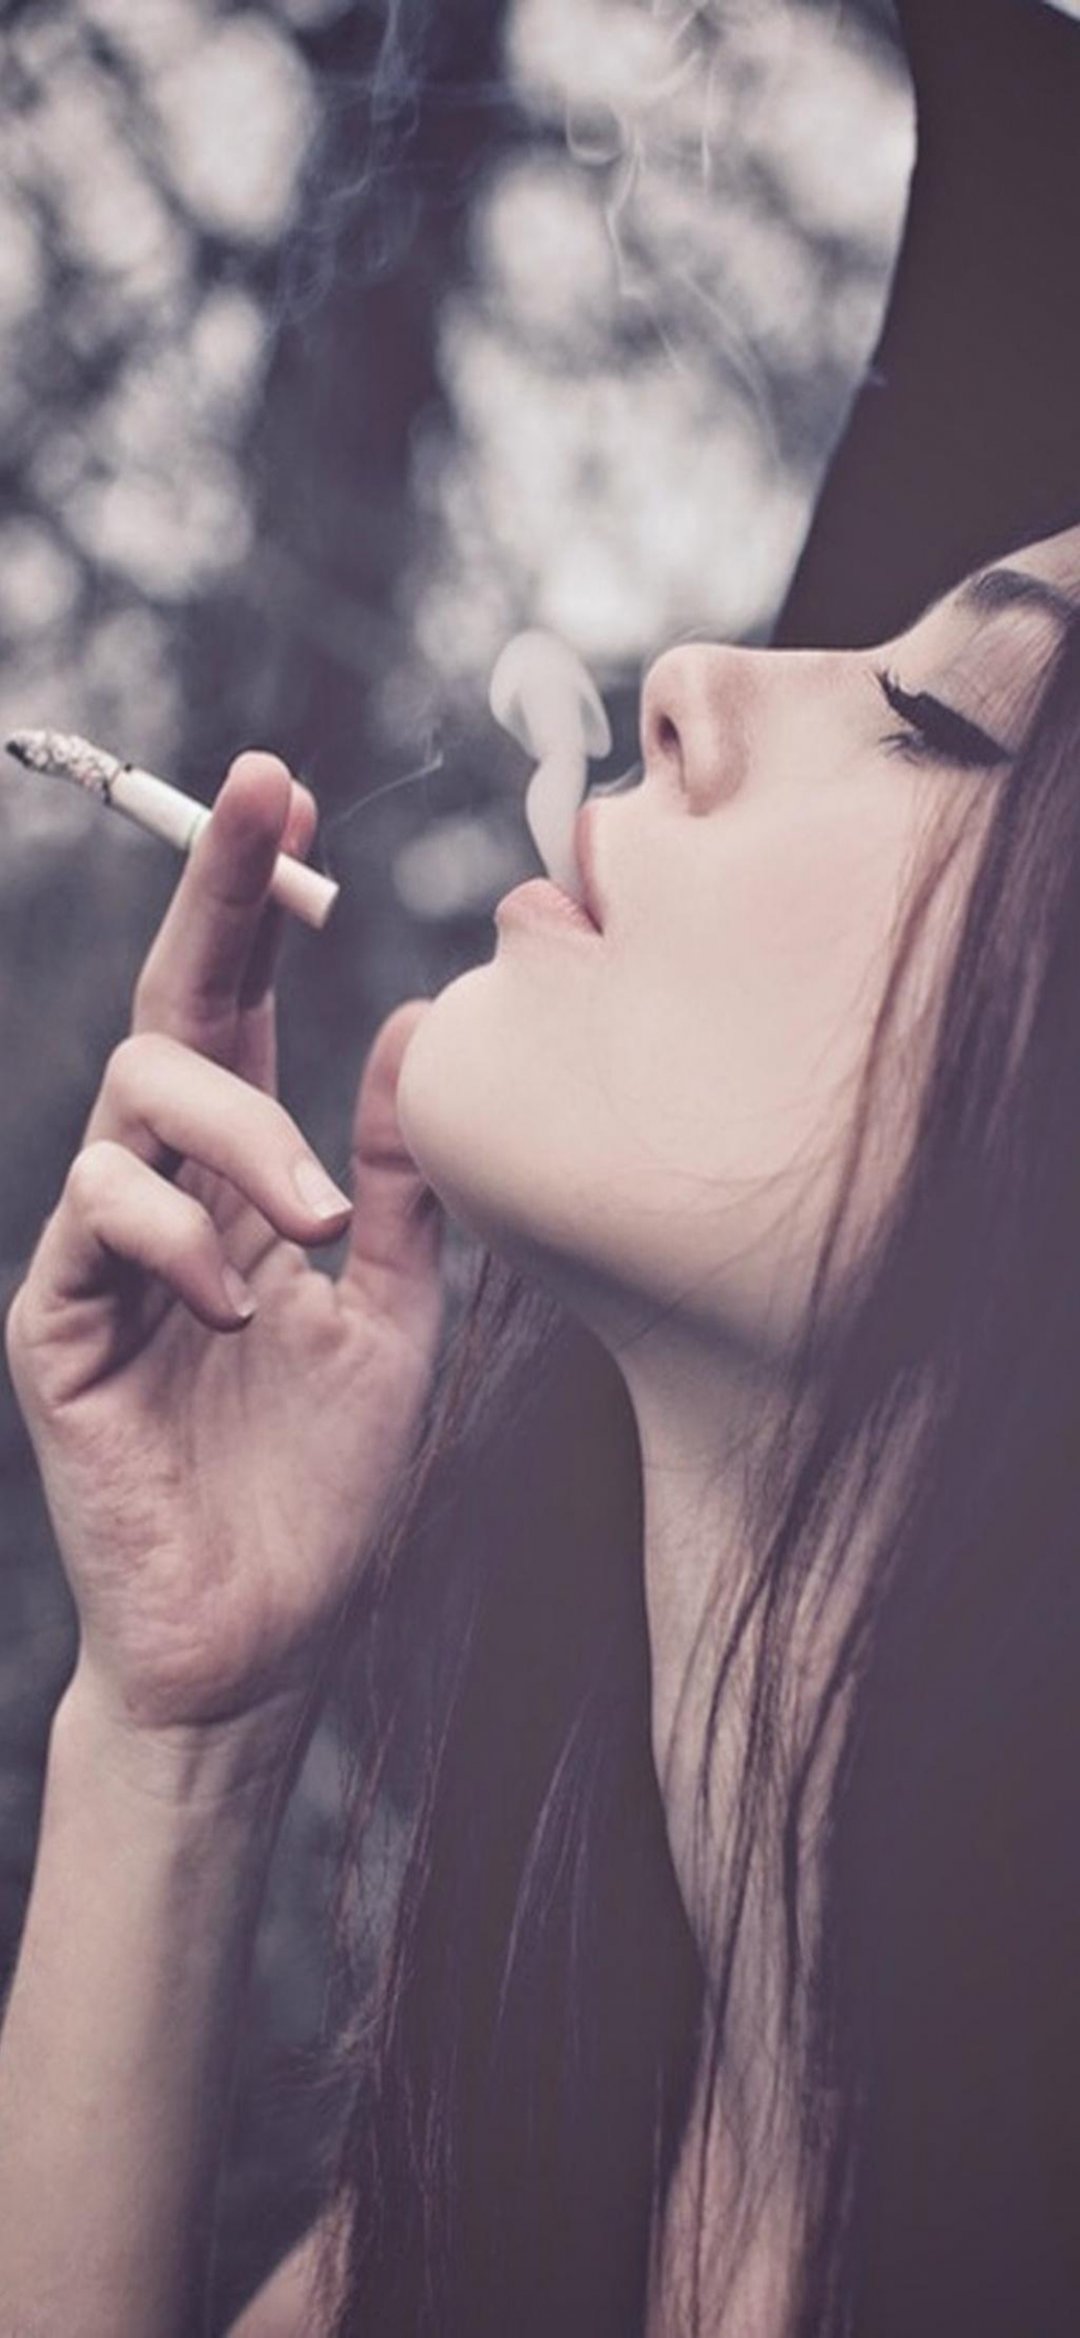 女孩吸烟